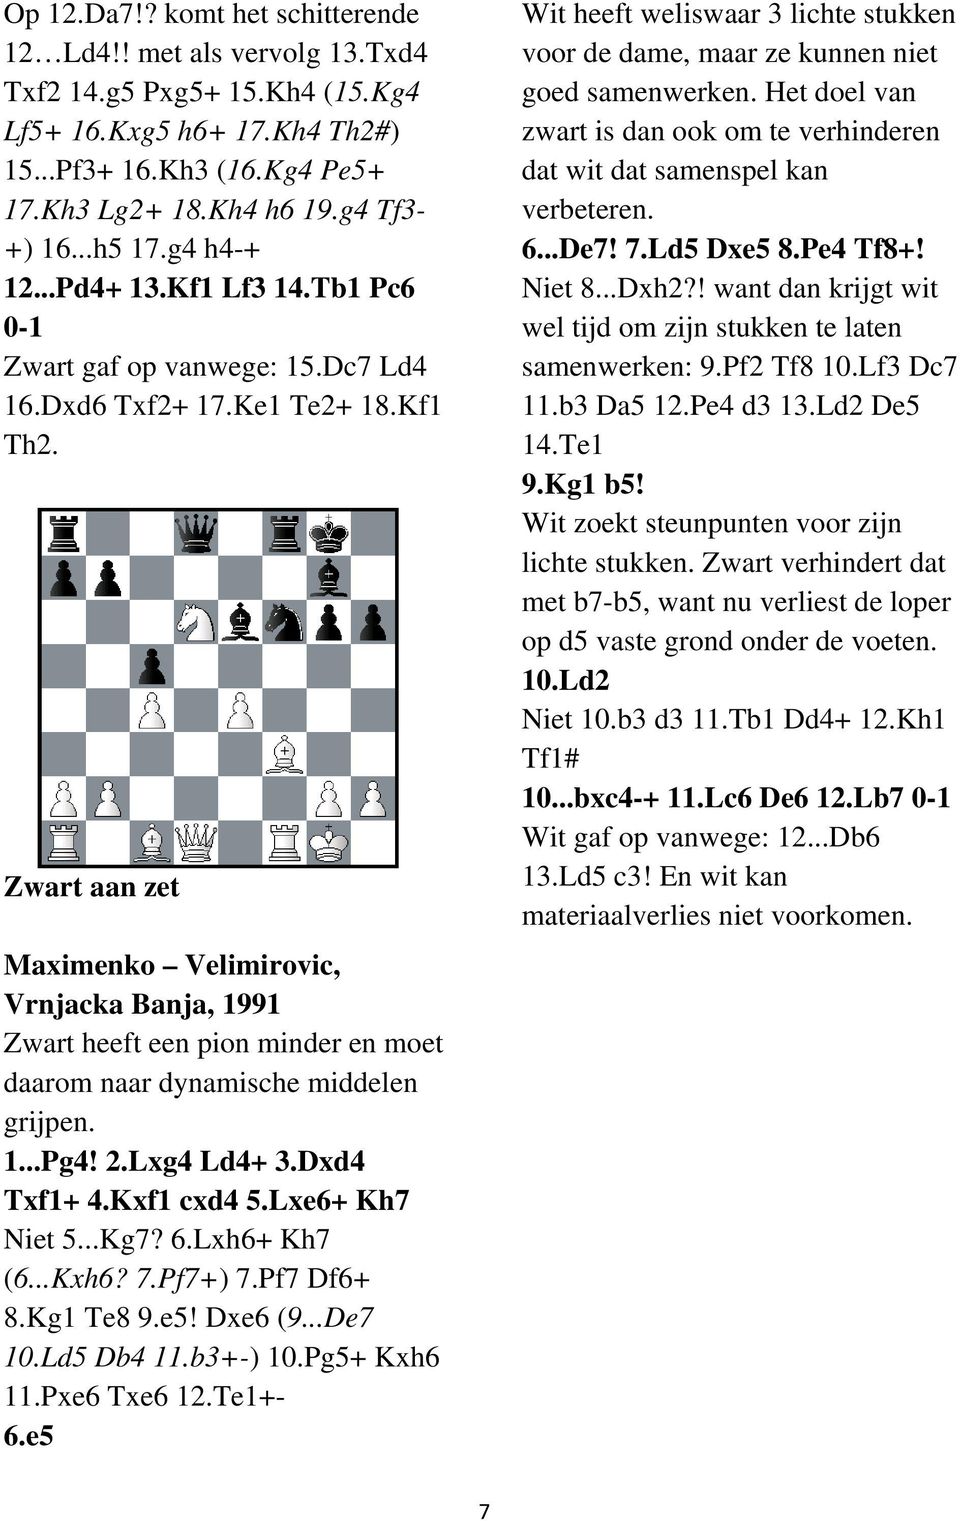 Zwart aan zet Maximenko Velimirovic, Vrnjacka Banja, 1991 Zwart heeft een pion minder en moet daarom naar dynamische middelen grijpen. 1...Pg4! 2.Lxg4 Ld4+ 3.Dxd4 Txf1+ 4.Kxf1 cxd4 5.Lxe6+ Kh7 Niet 5.